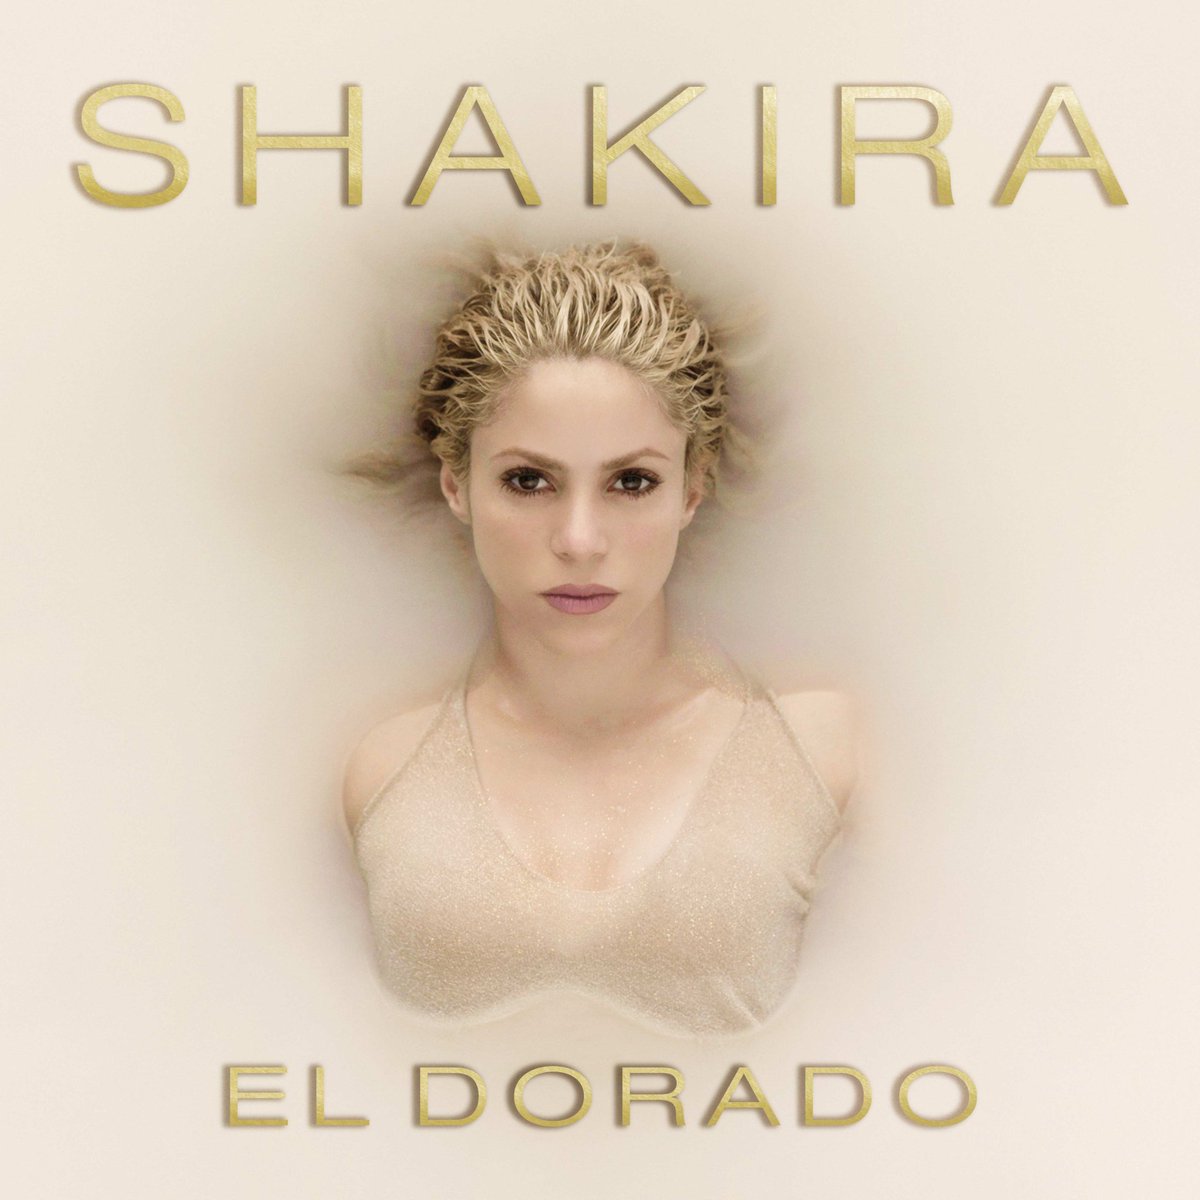 RT @Beats1: Loving #ElDorado!
Get @shakira's new album on @AppleMusic in a matter of hours! https://t.co/B4LnWhaHQx https://t.co/SB1qHjVg4F